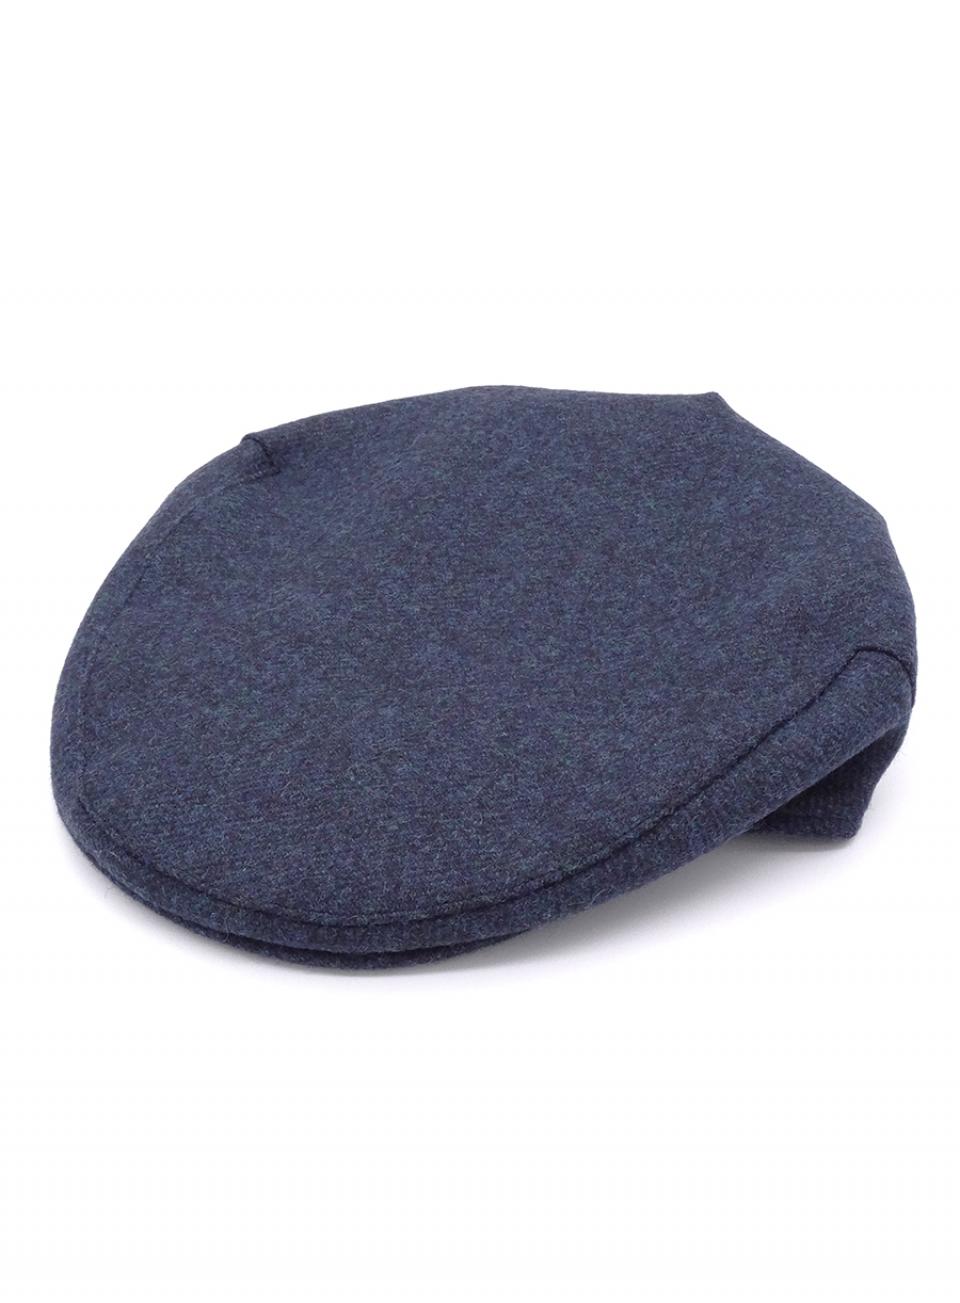 Navy Tweed Flat Cap